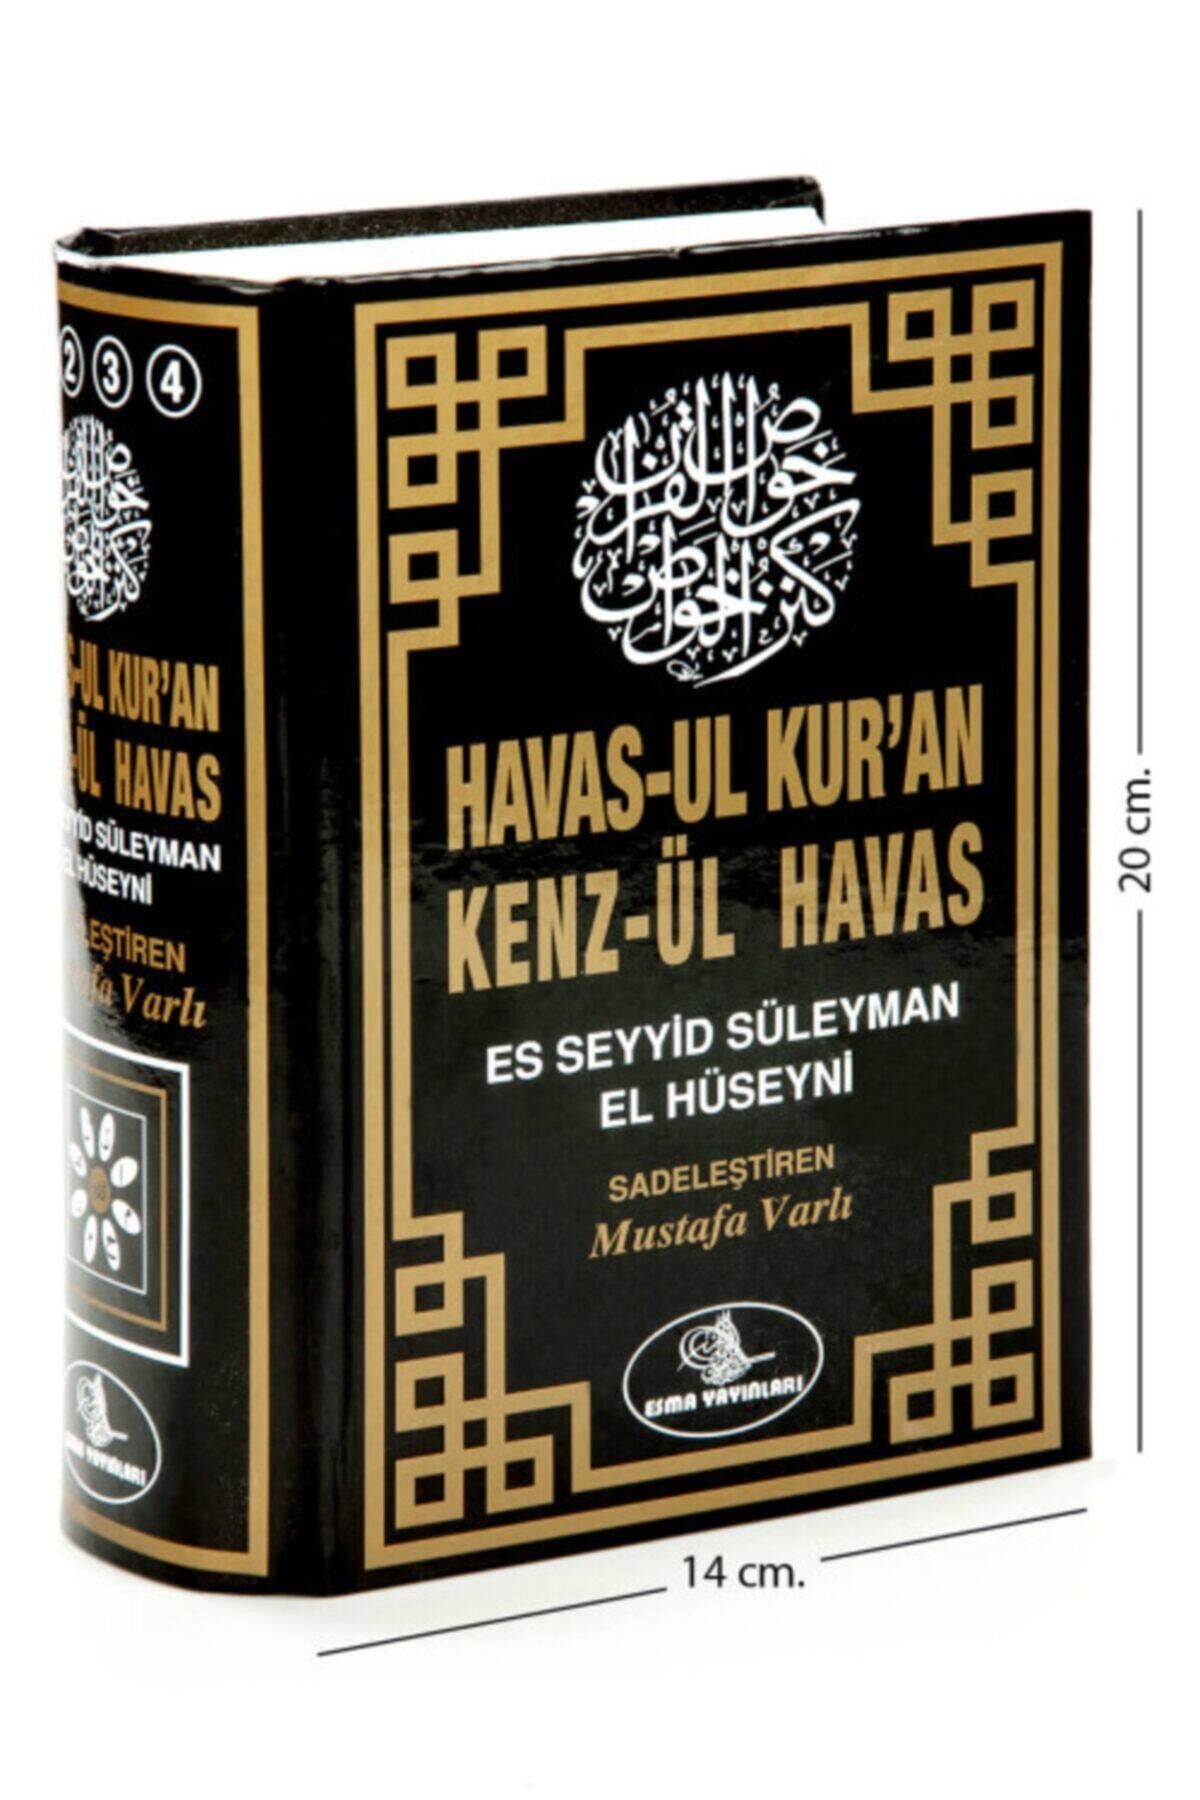 Esma Yayınları Havas'ul Kur'an Kenzül Havas - - Es Seyyid Süleyman El Hüseyni Mustafa Varlı